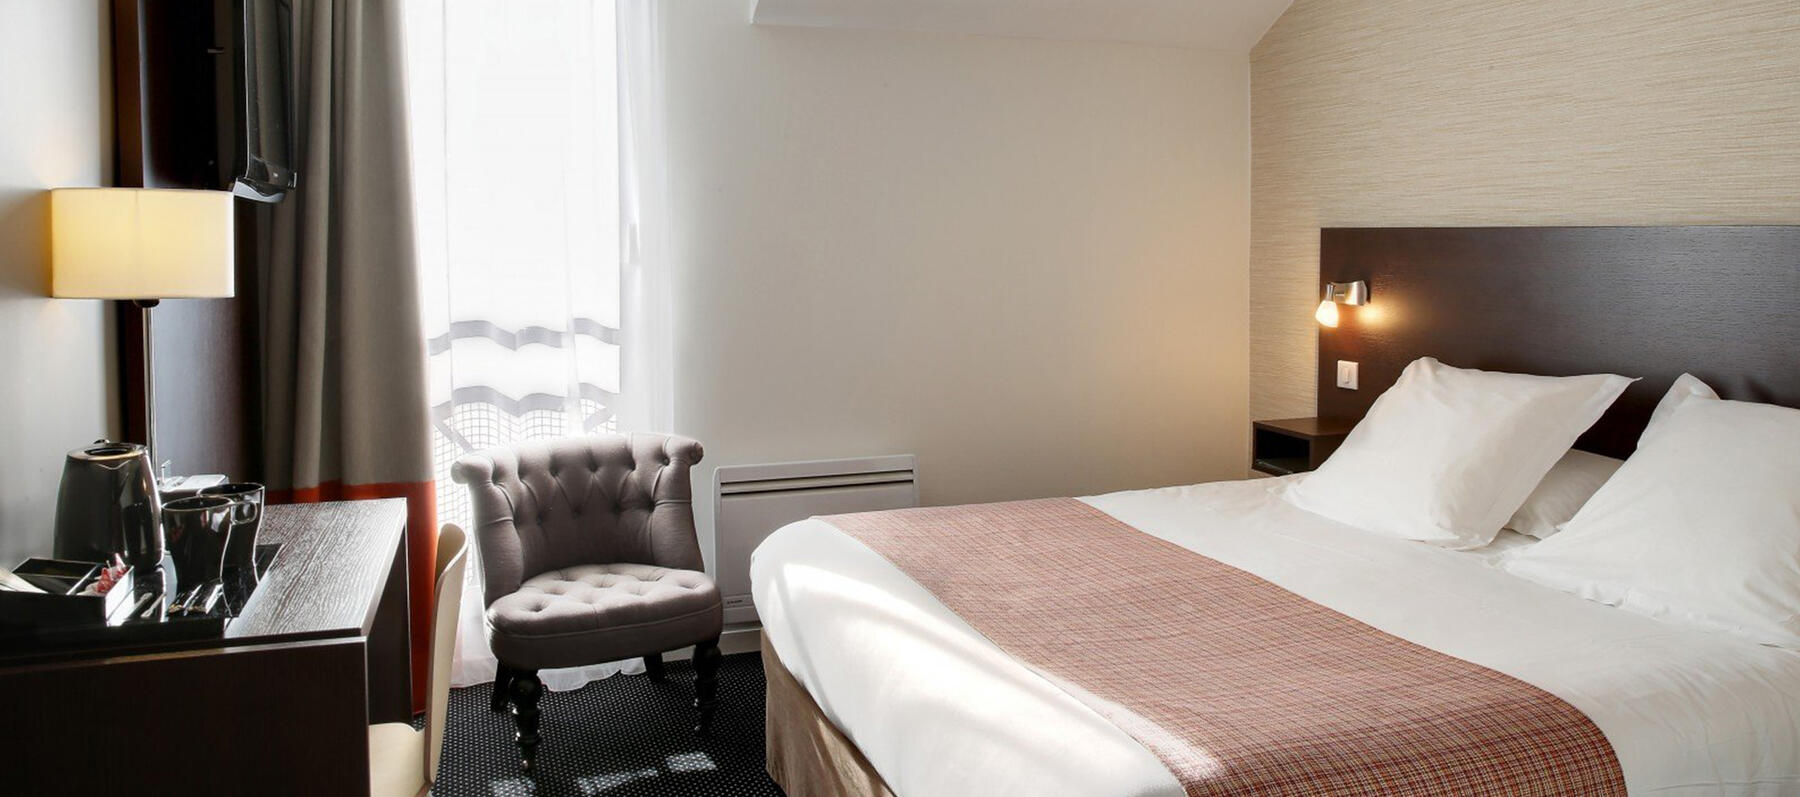 Logis Havvah Hôtel Gap propose 40 chambres confortables